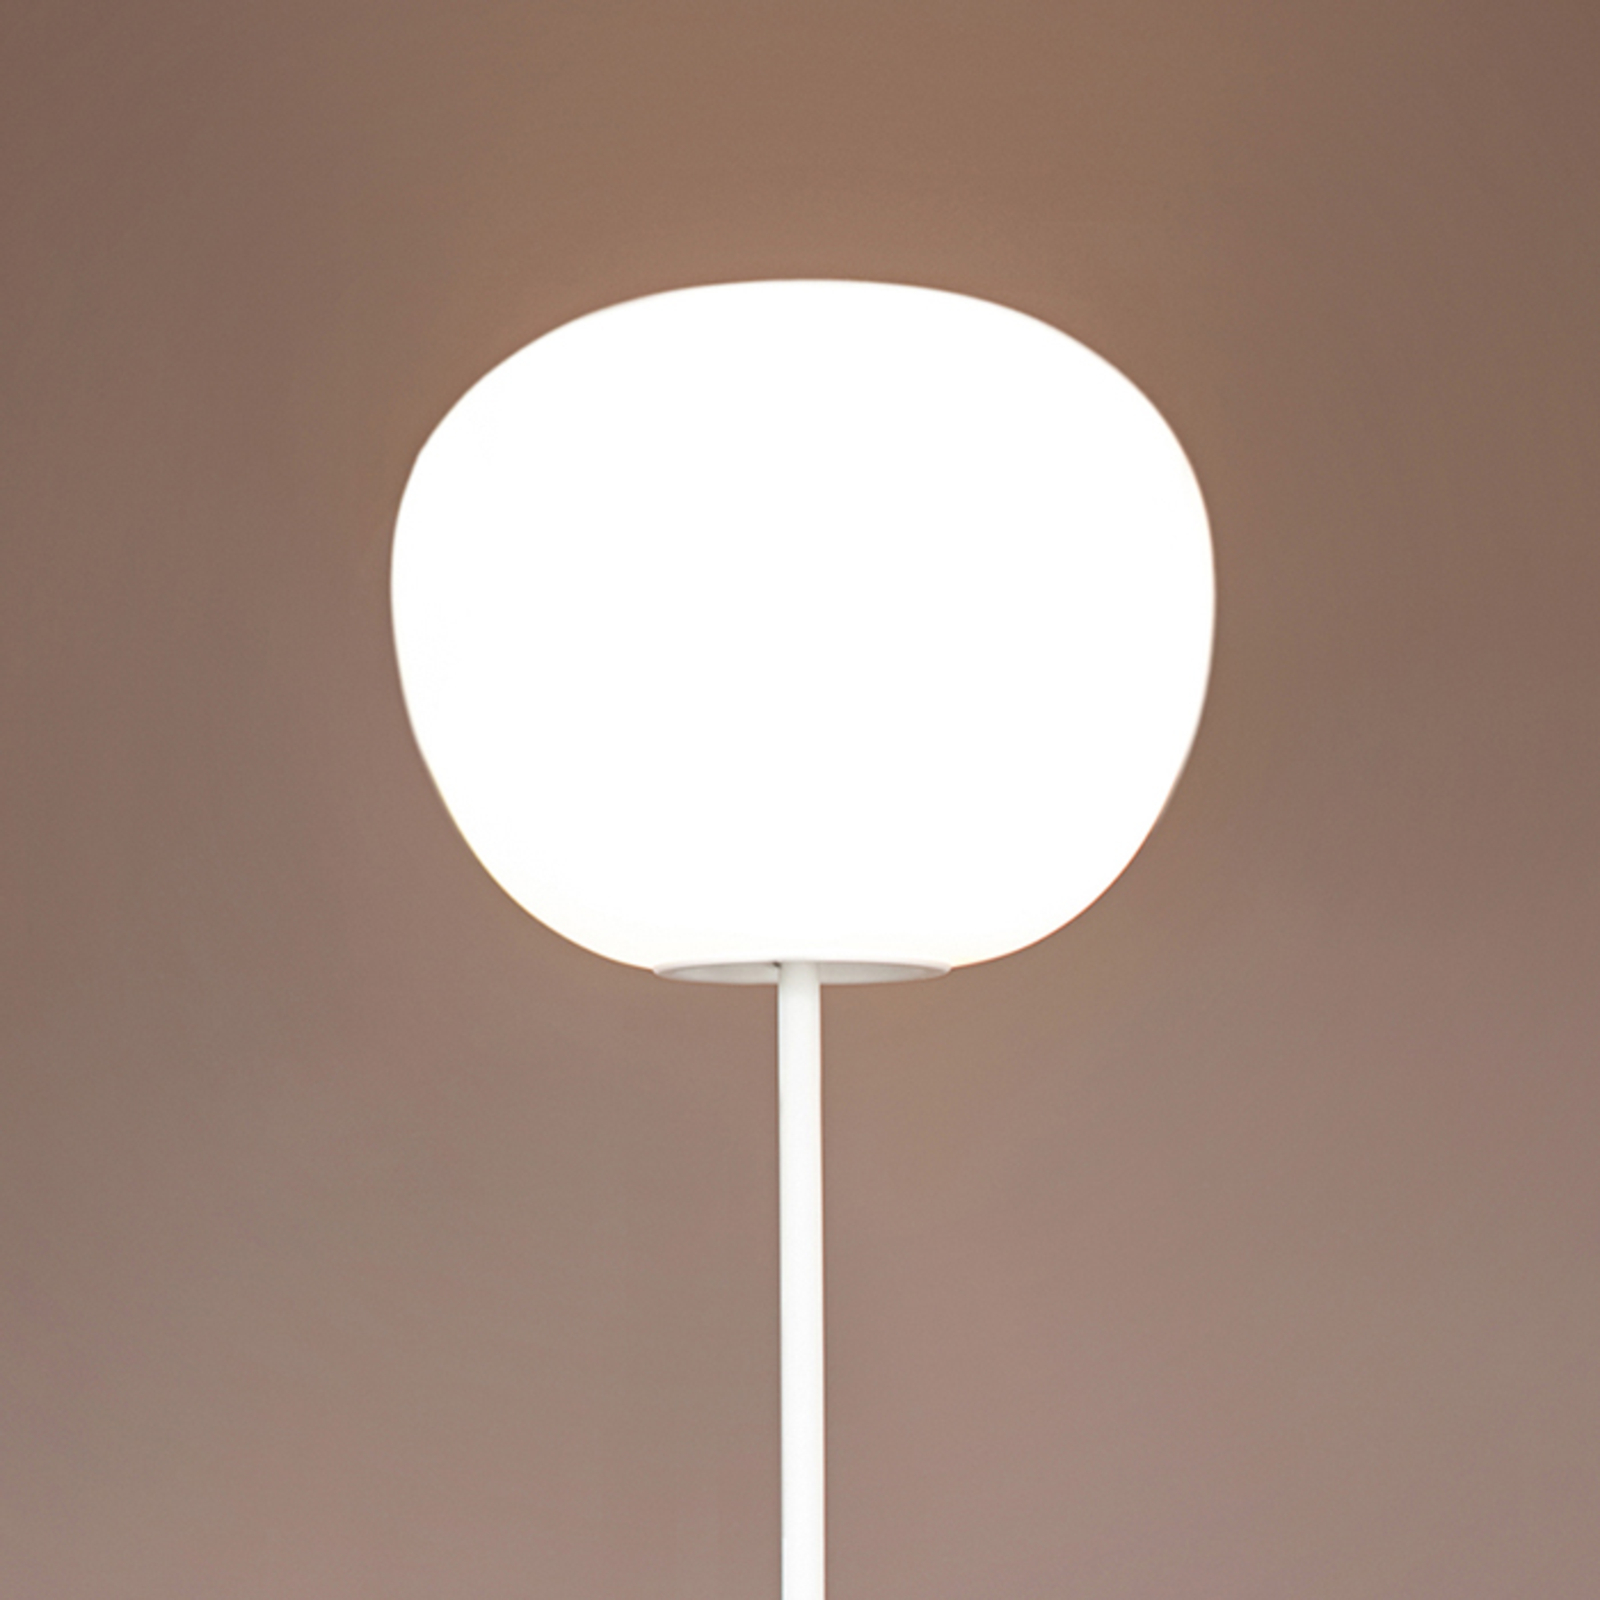 Incantevole lampada da pavimento MOCHI 38 cm